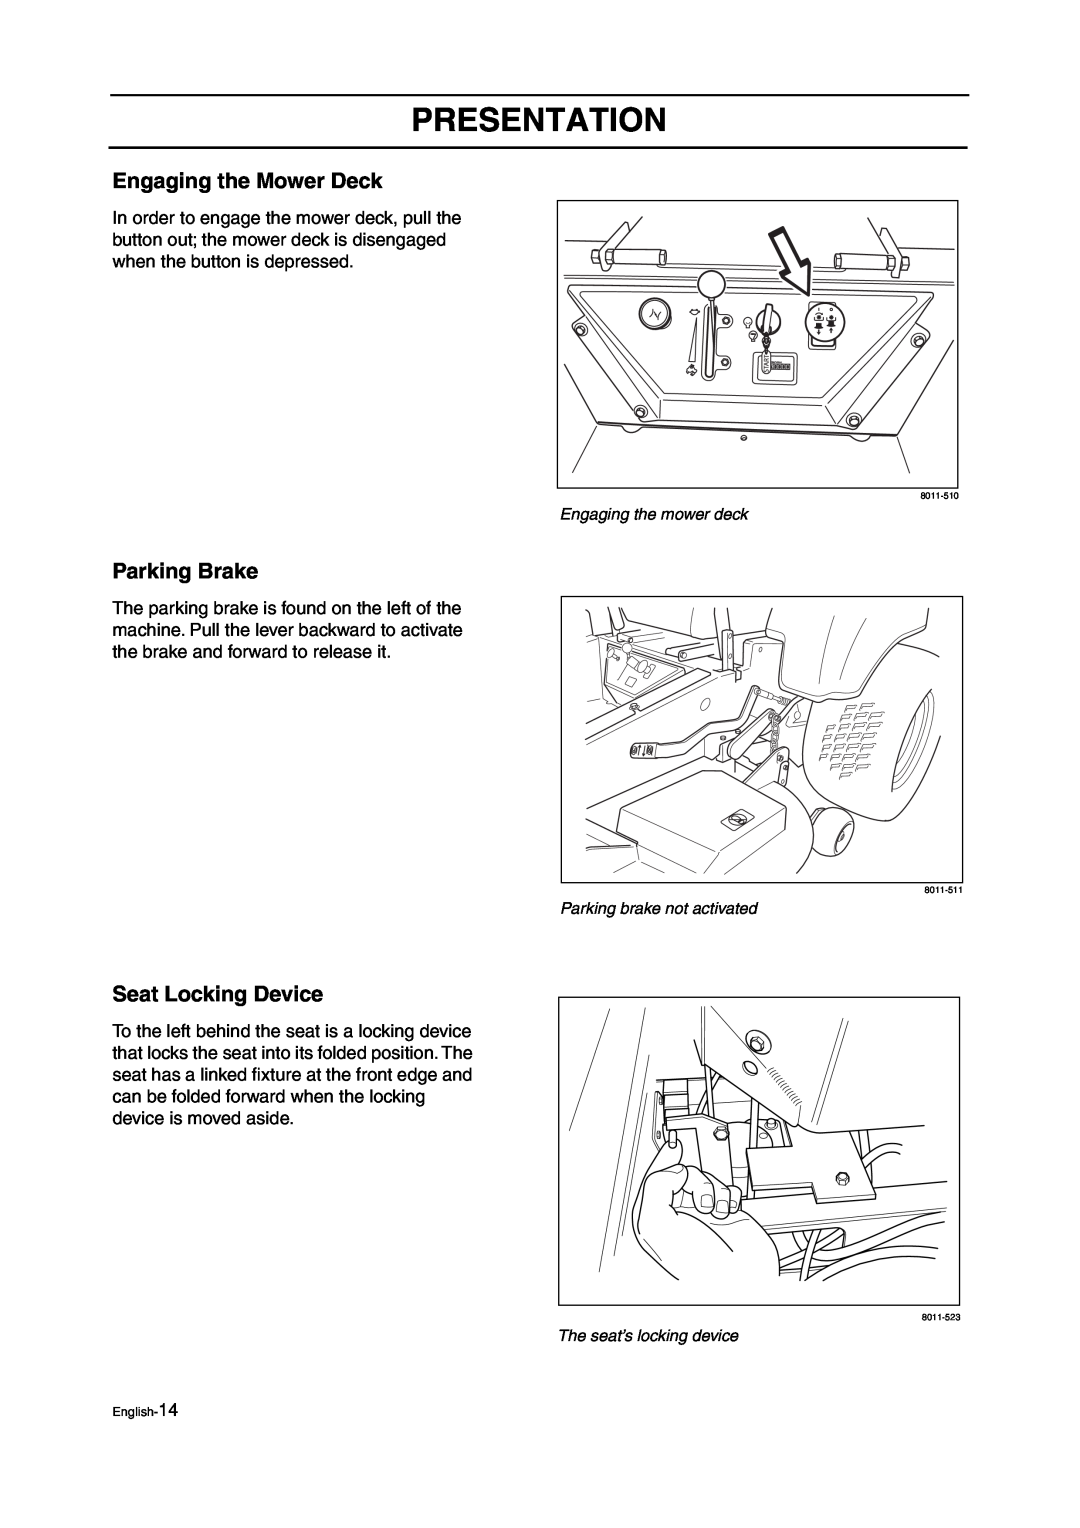 Husqvarna ZTH manual Engaging the Mower Deck, Parking Brake, Seat Locking Device, Presentation, Engaging the mower deck 